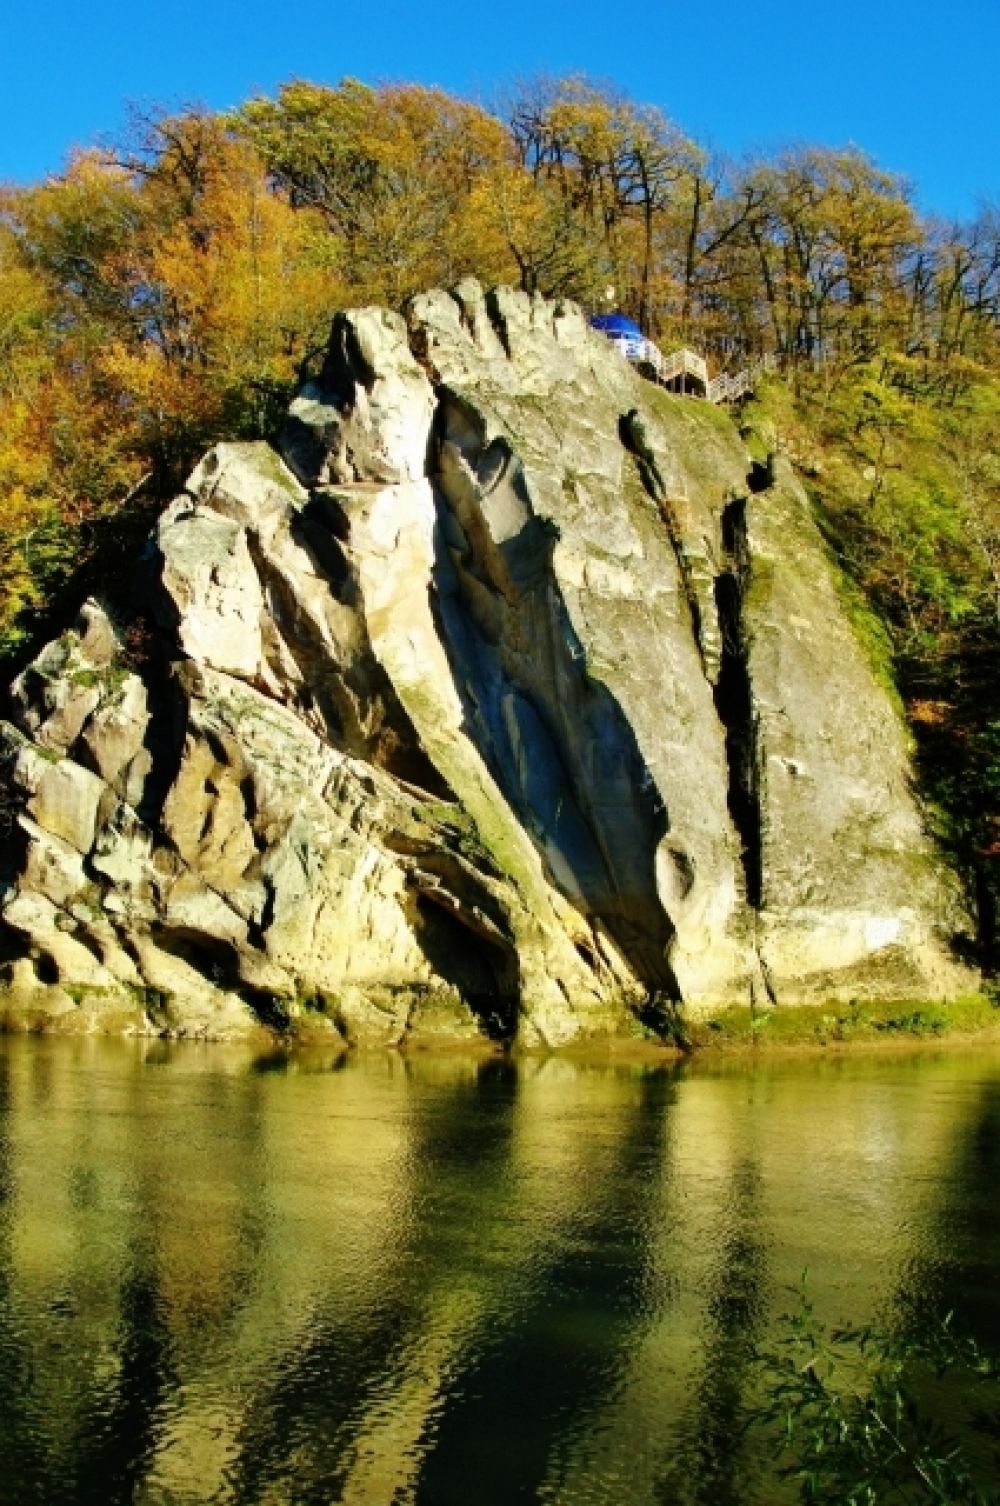 Скала Спасения (Петушок) на реке Псекупс в Горячем Ключе. Автор - Рагдай.